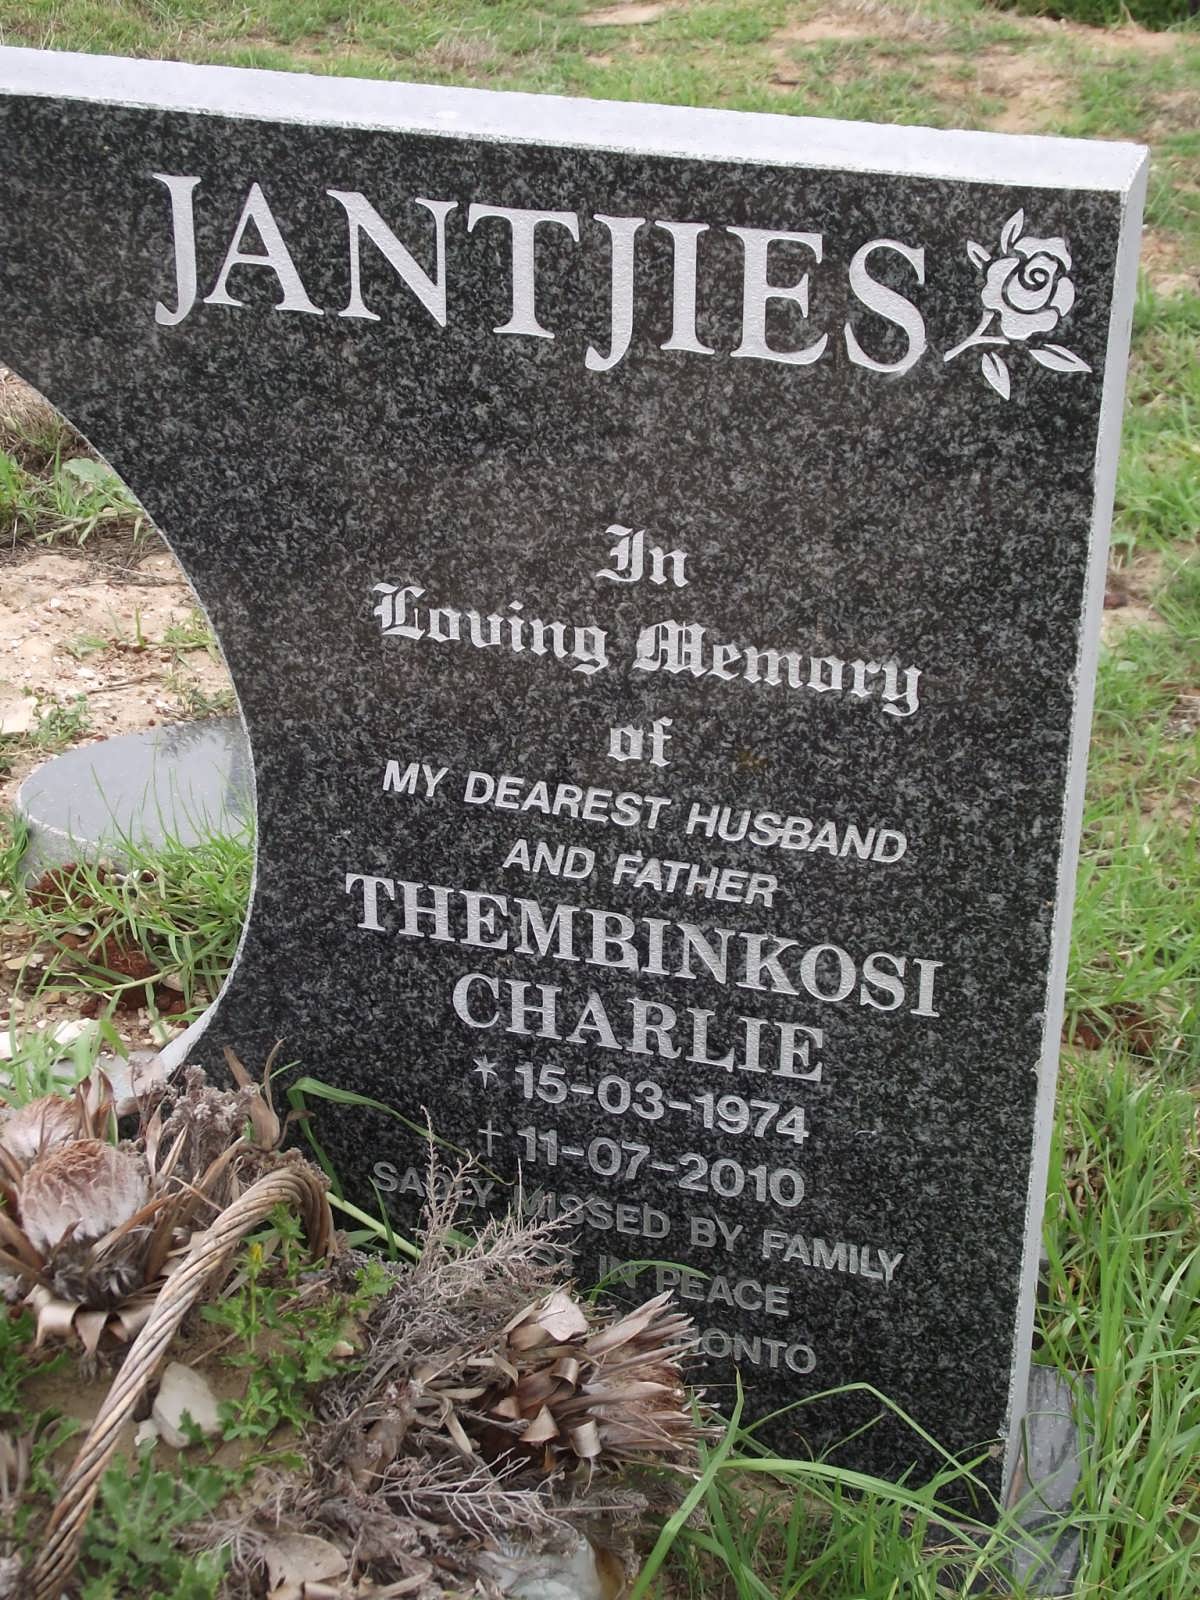 JANTJIES Thembinkosi Charlie 1974-2010